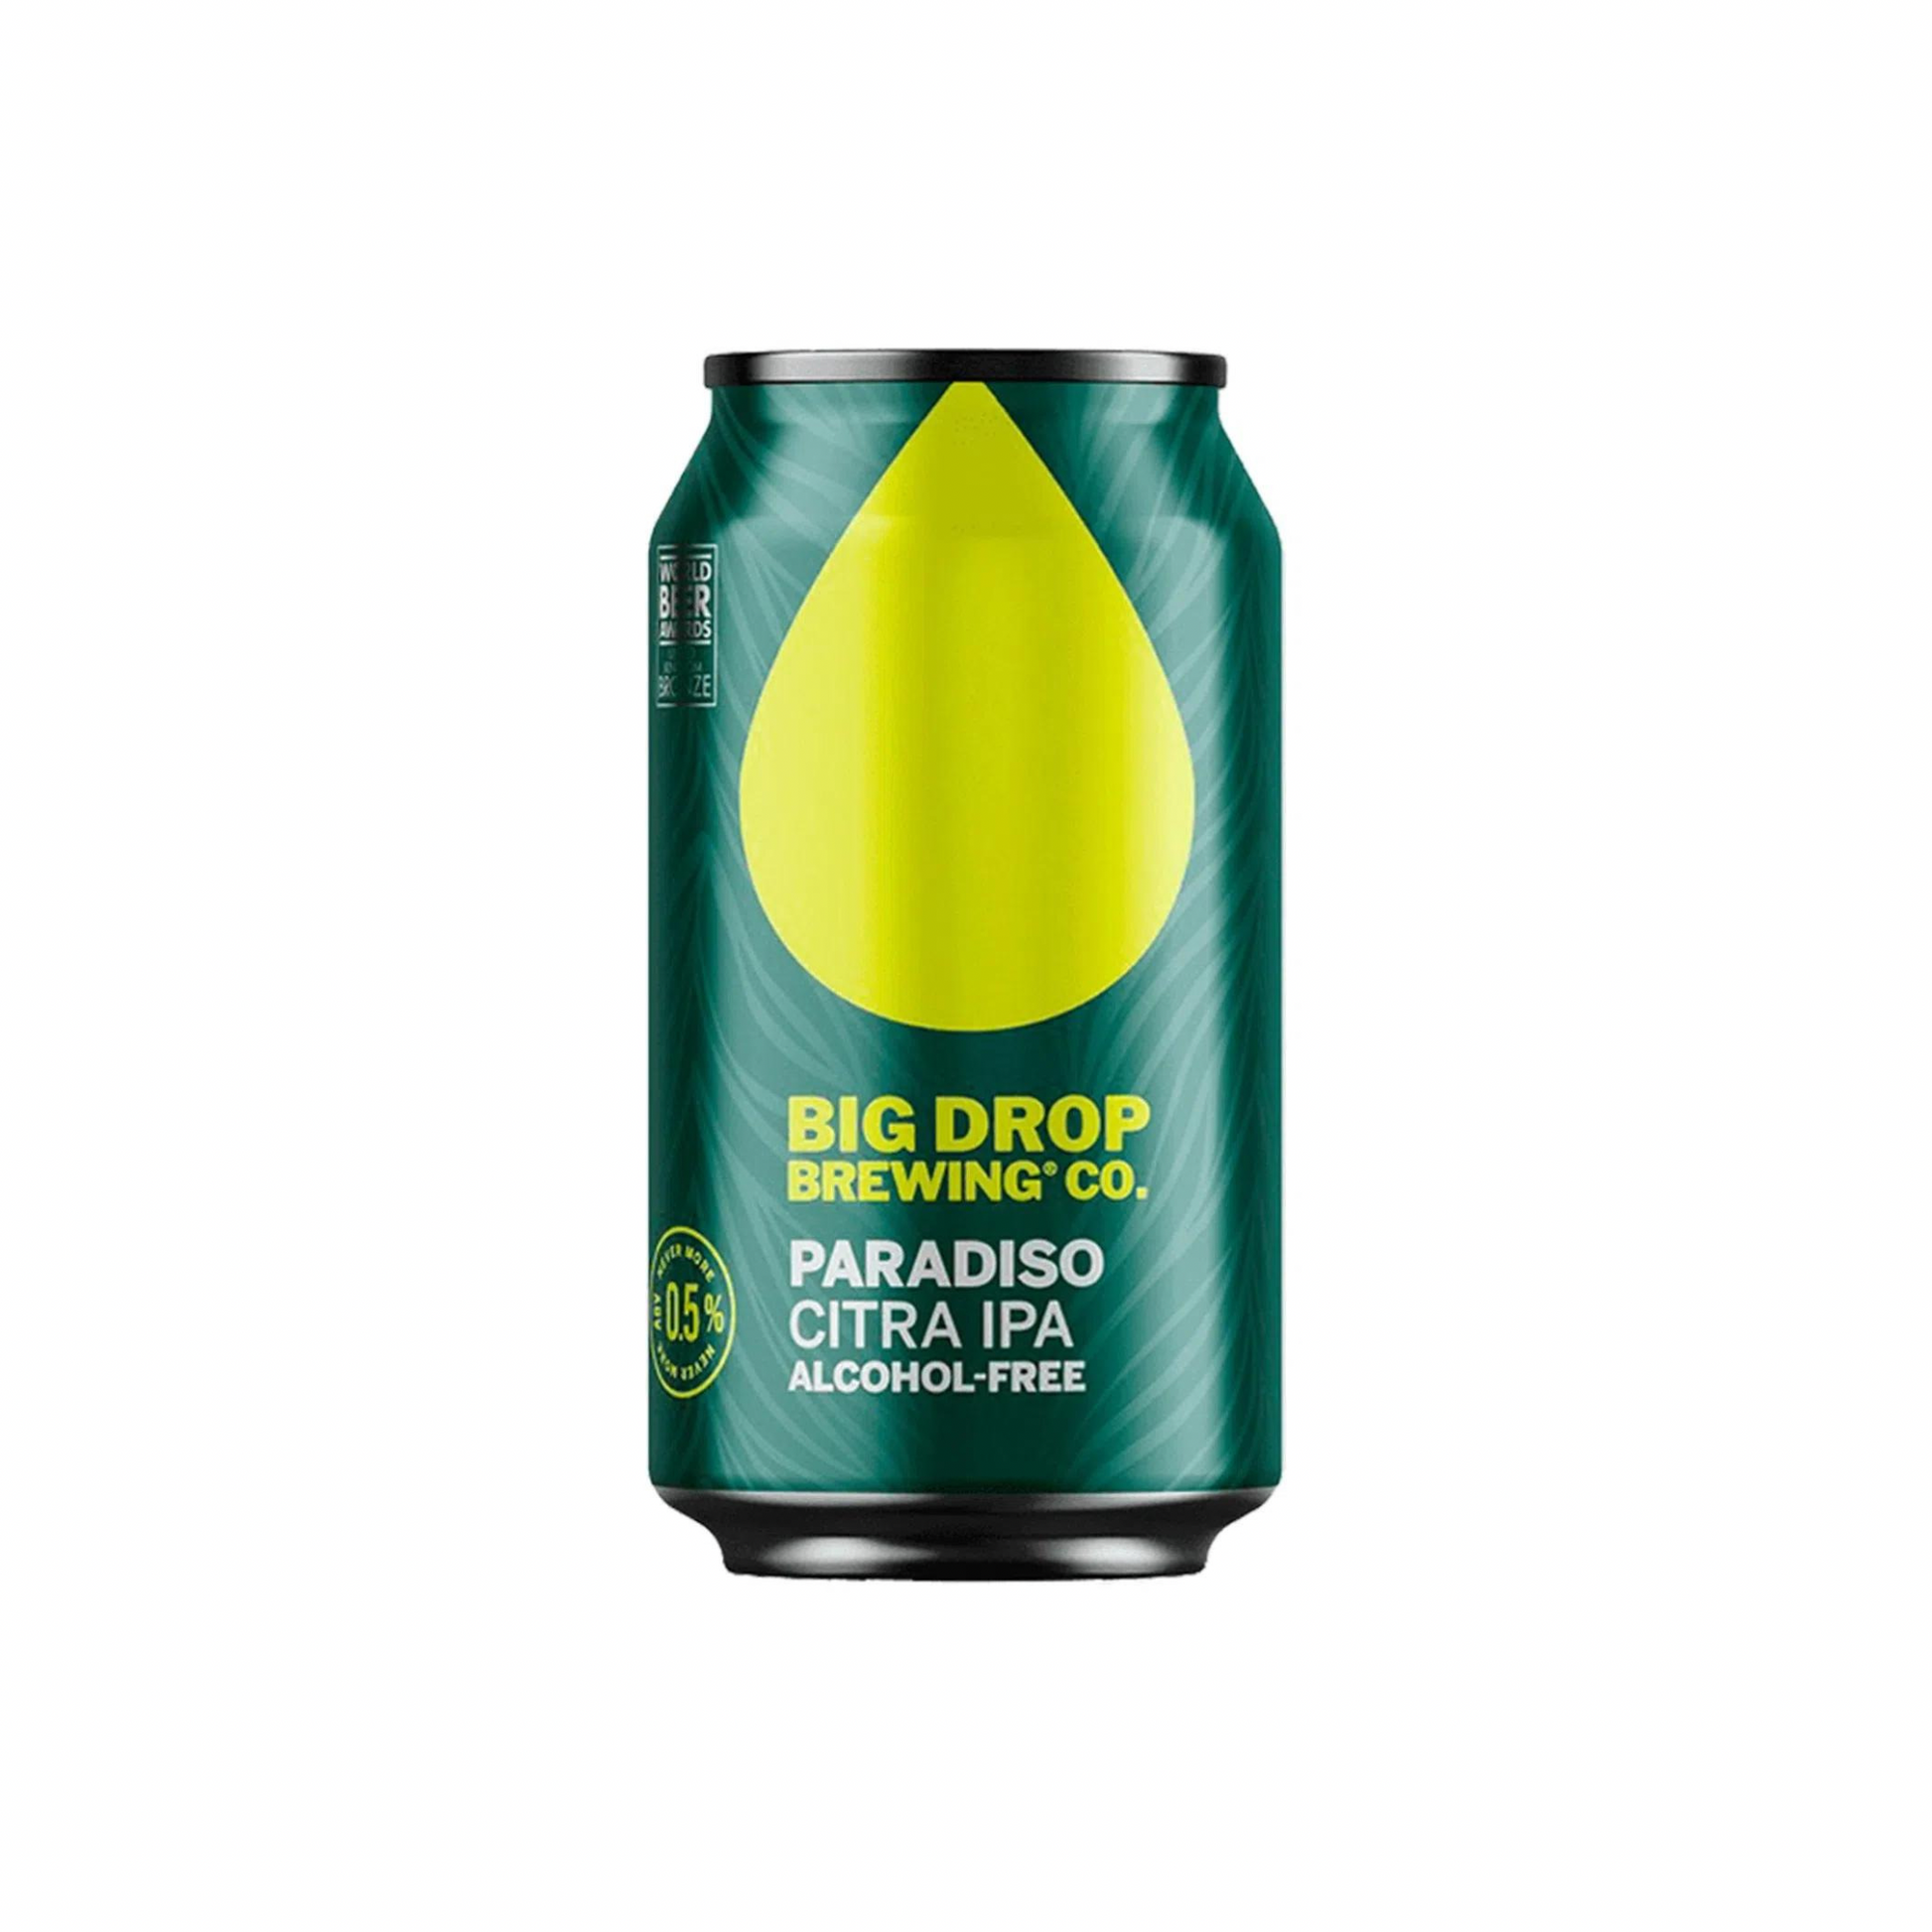 Big Drop Paradiso Citra IPA Alcohol-Free Beer